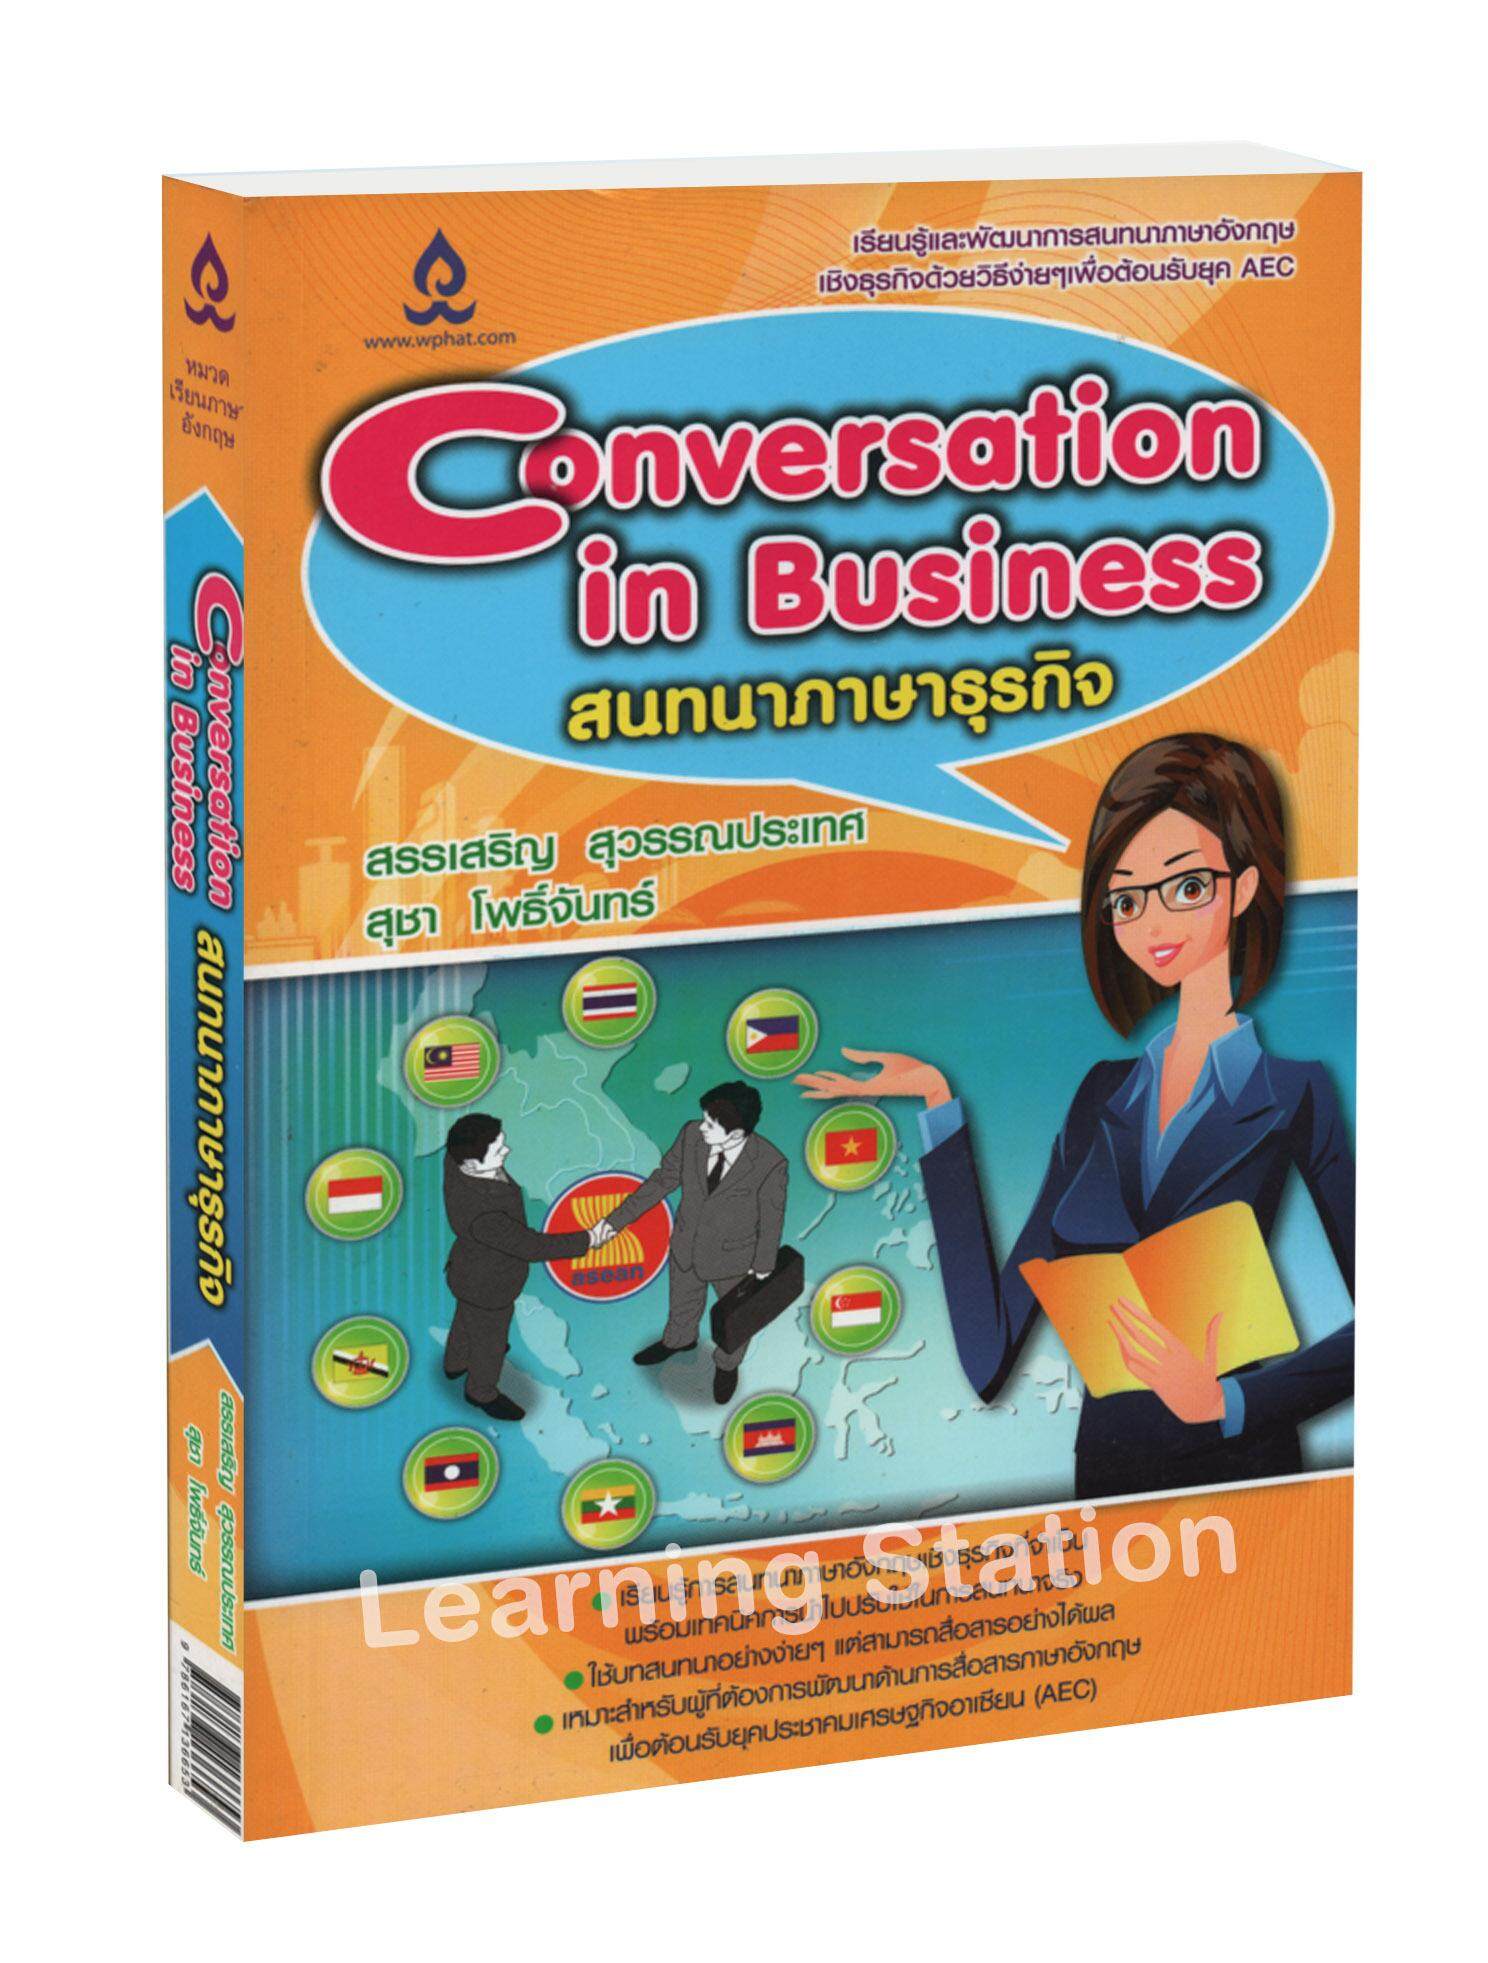 สนทนาภาษาธุรกิจ : Conversation in Business